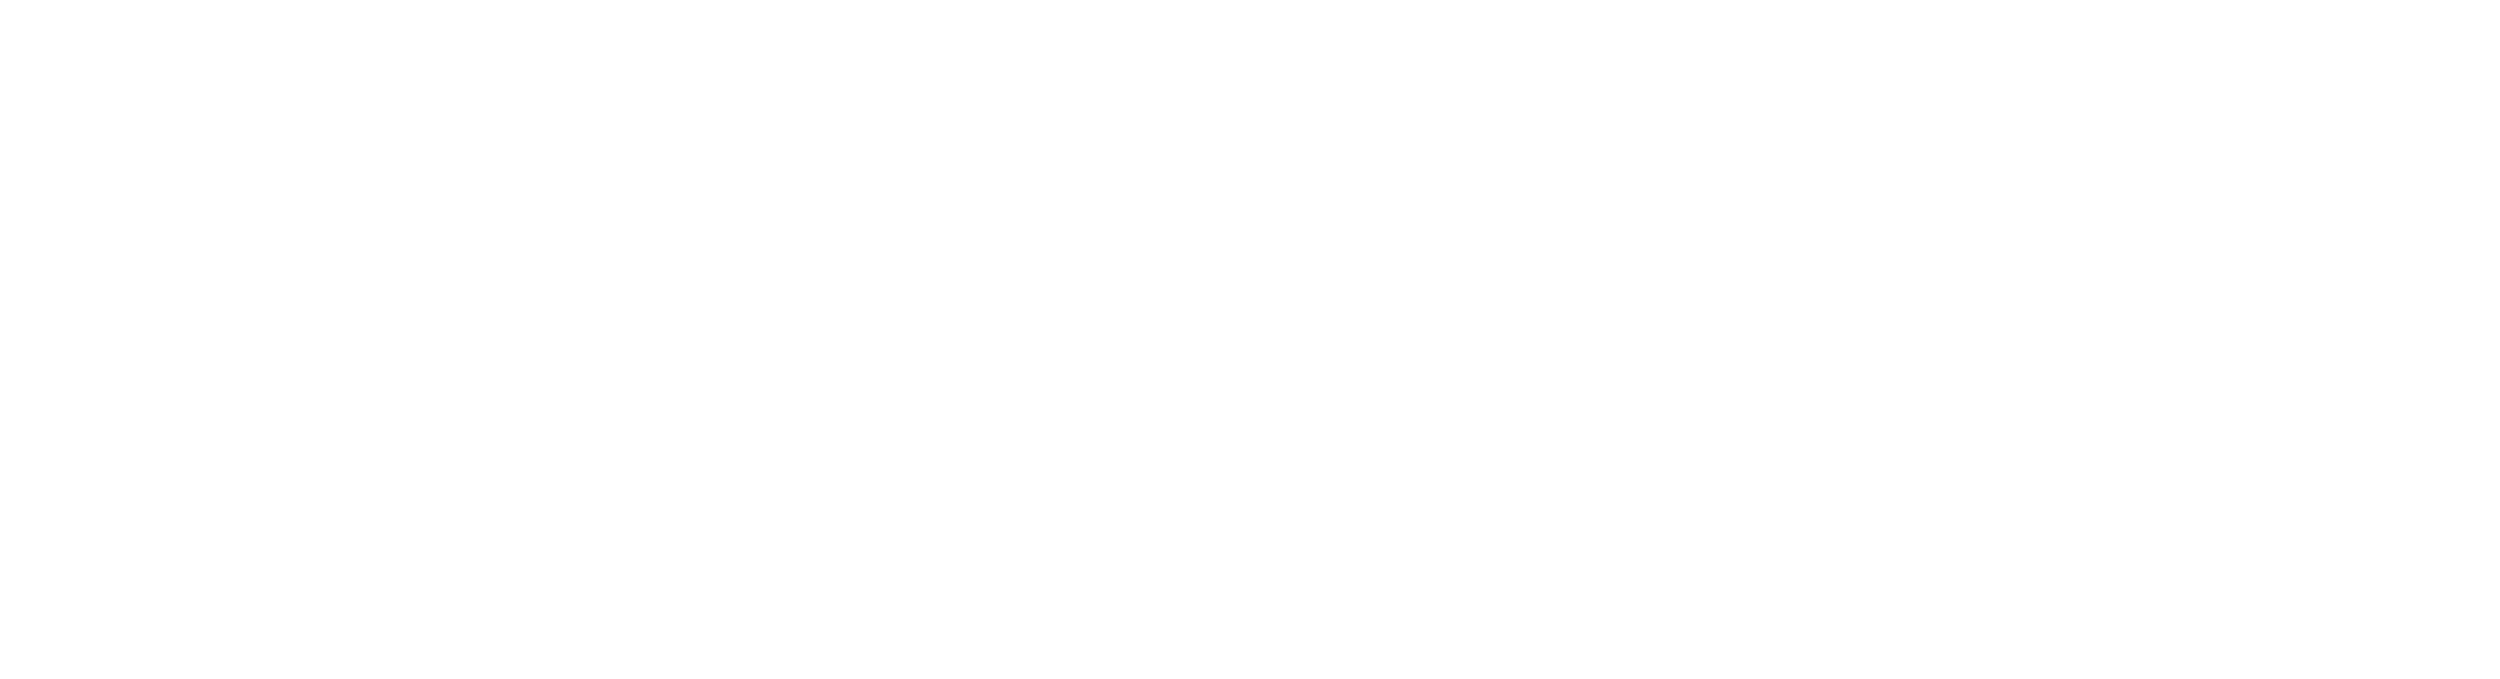 Valiant Spotlight Logo.png